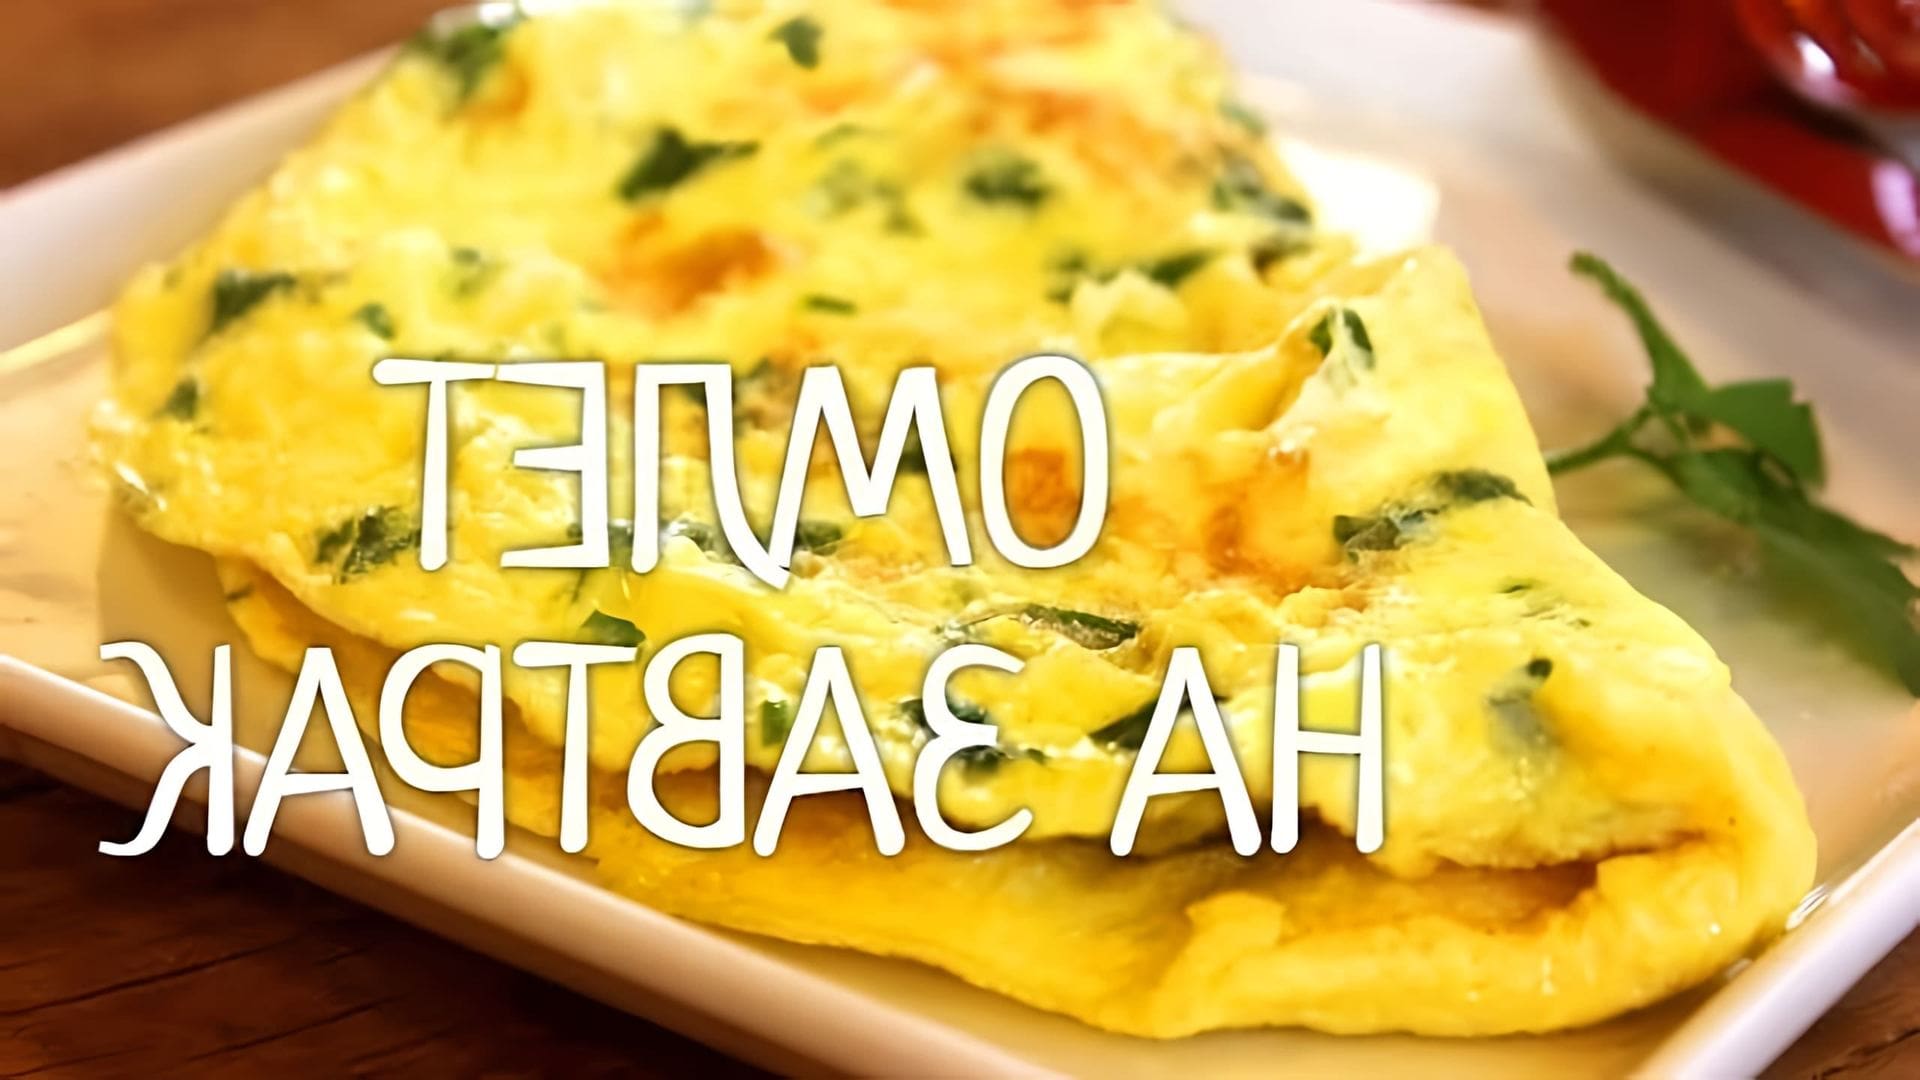 В этом видео-ролике вы увидите, как приготовить идеальный завтрак - омлет с сыром и зеленым луком